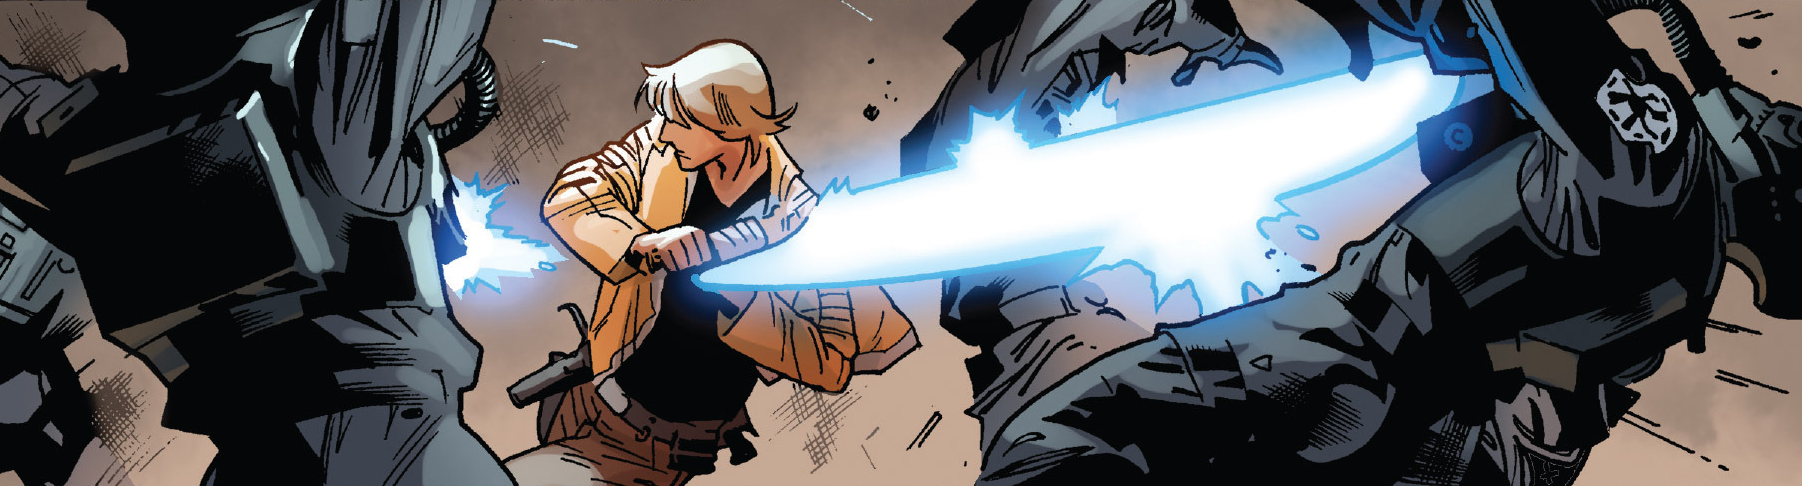 Plik:Skywalker walczy z imperialnymi na arenie.png